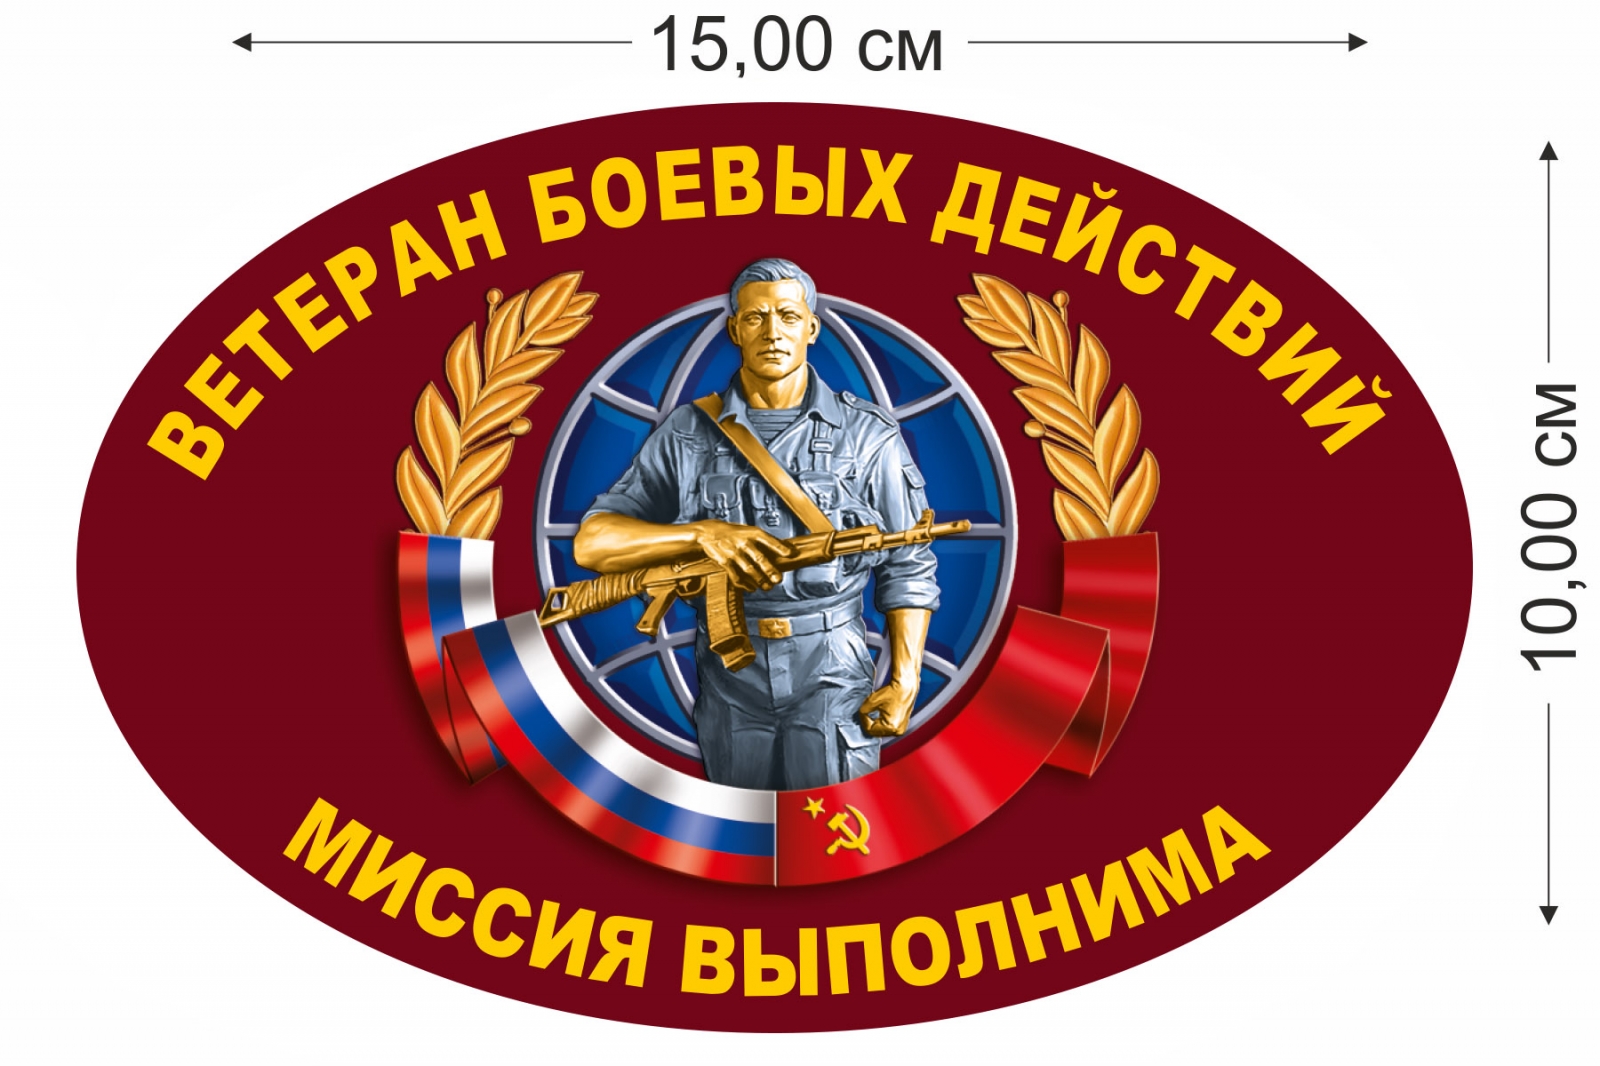 Наклейка "Ветеран боевых действий" 